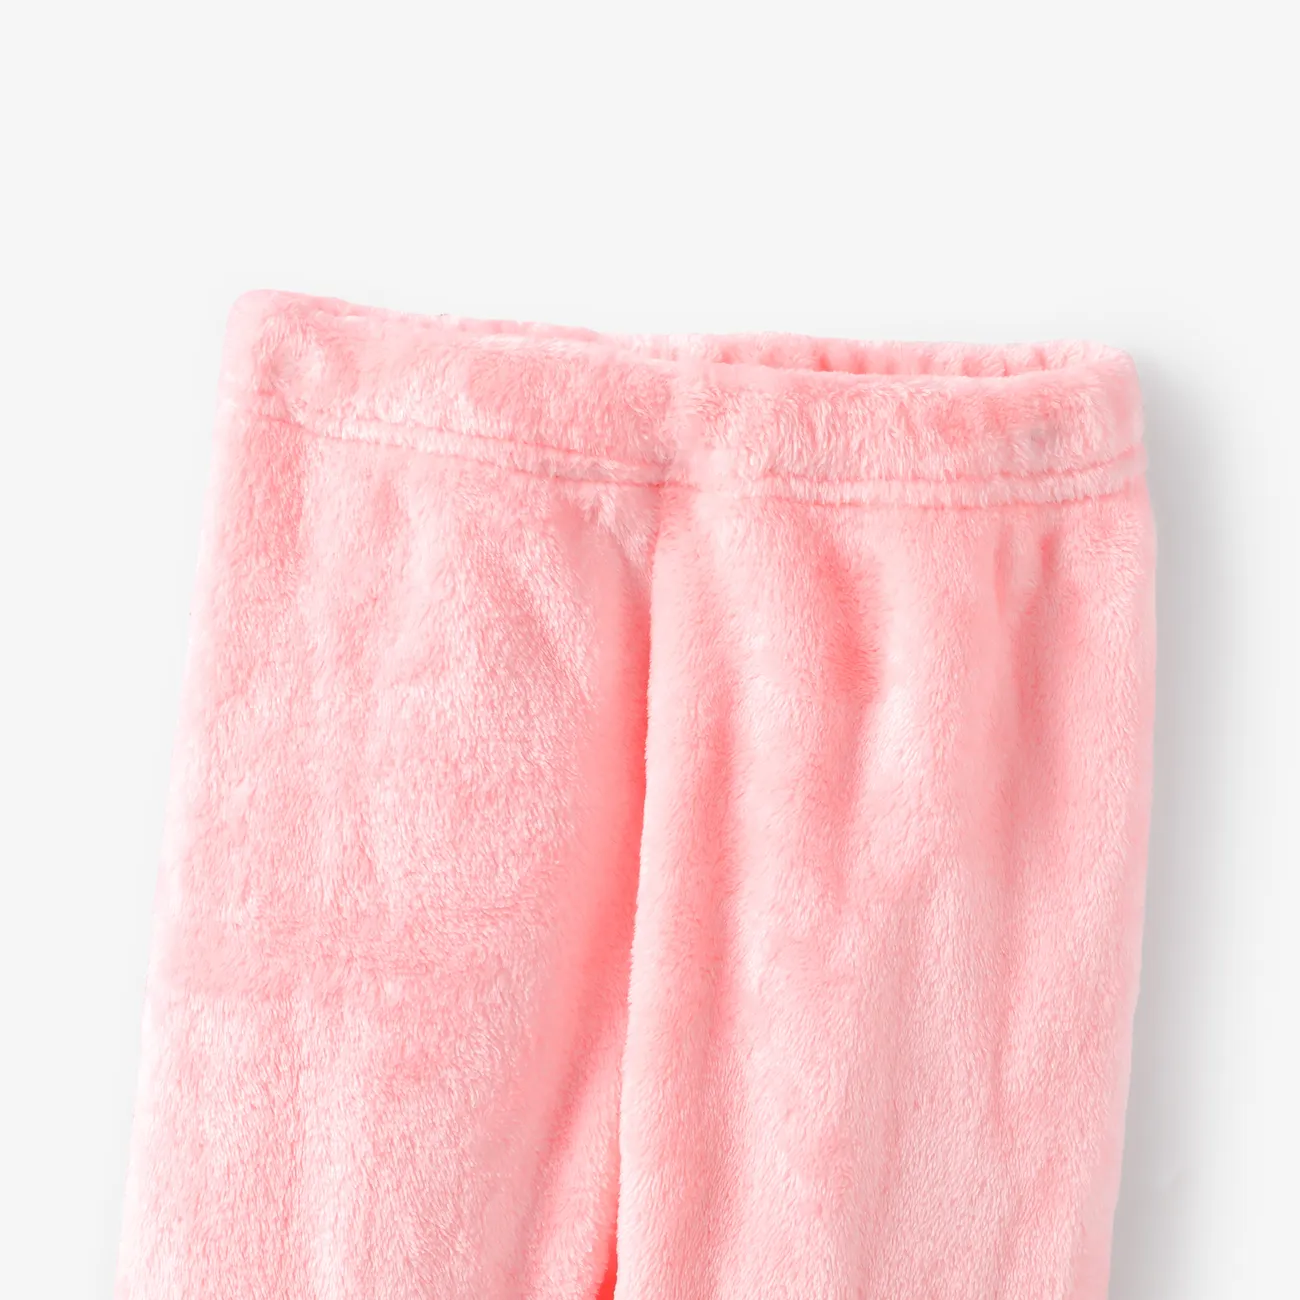 2 Stück Kleinkinder Mädchen Lässig Sweatshirt-Sets Hell rosa big image 1